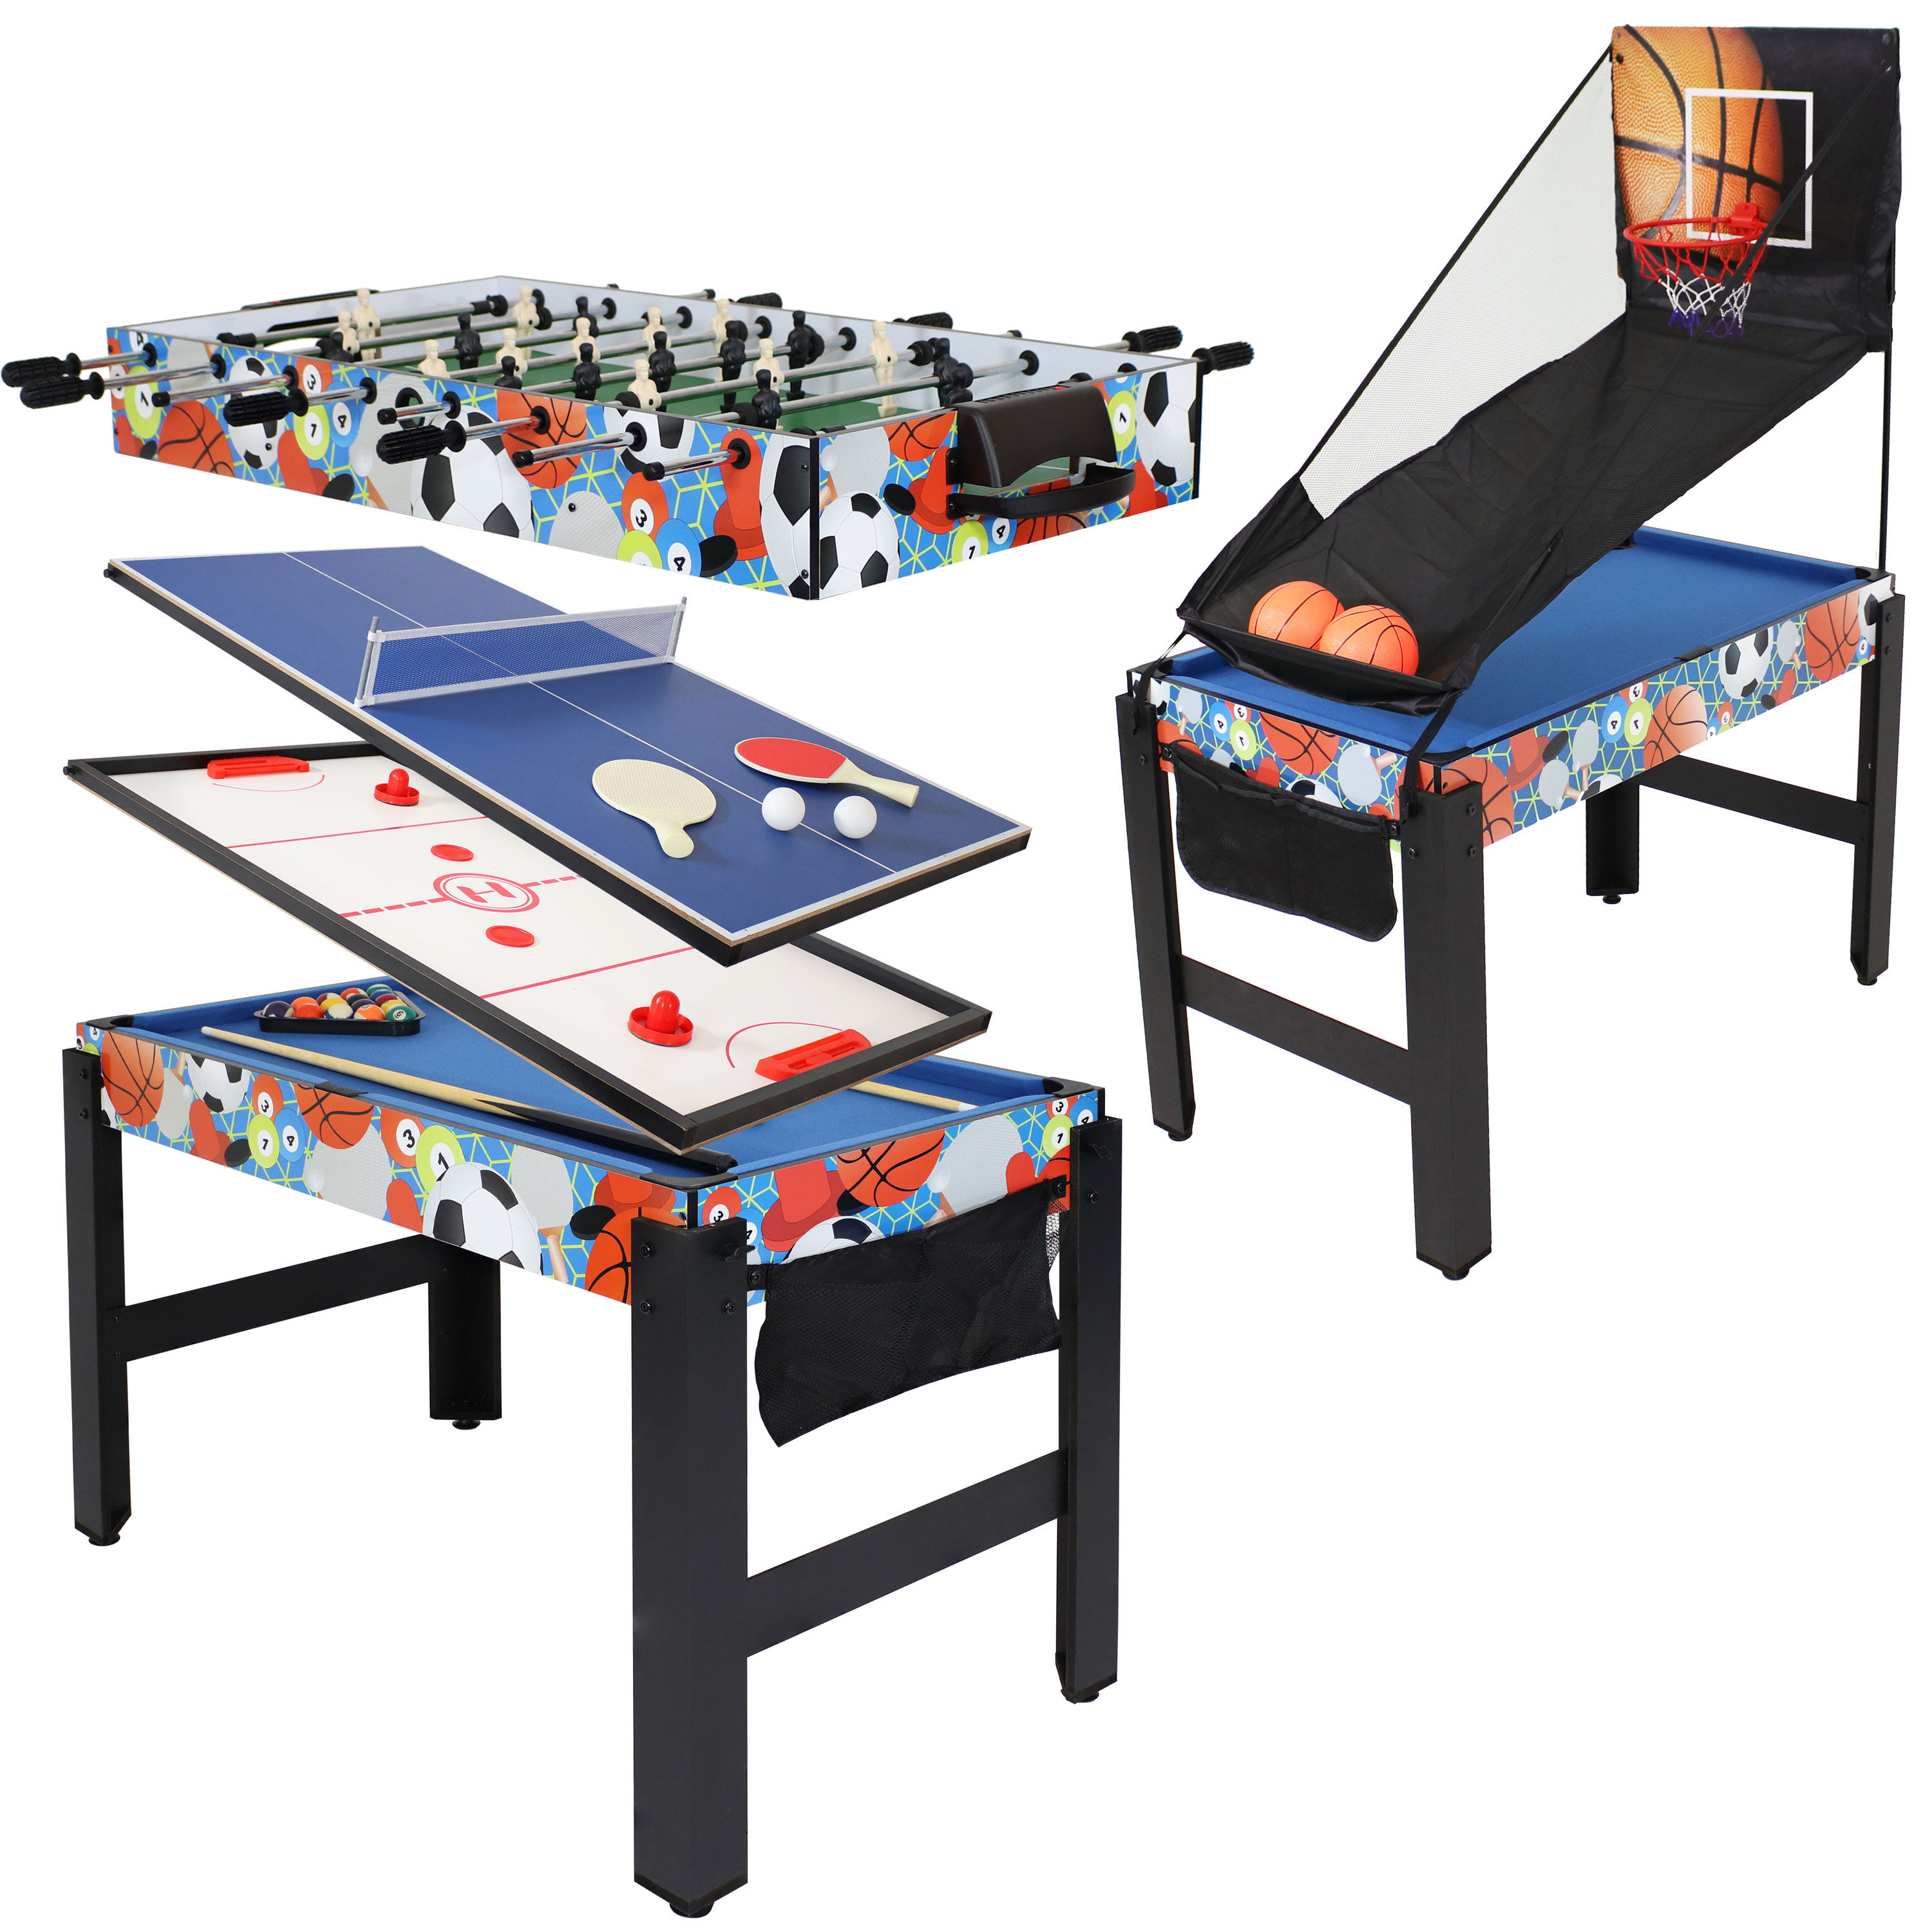 Sunnydaze Sport Collage 5-in-1 Multi-Game Table - Multi-Color